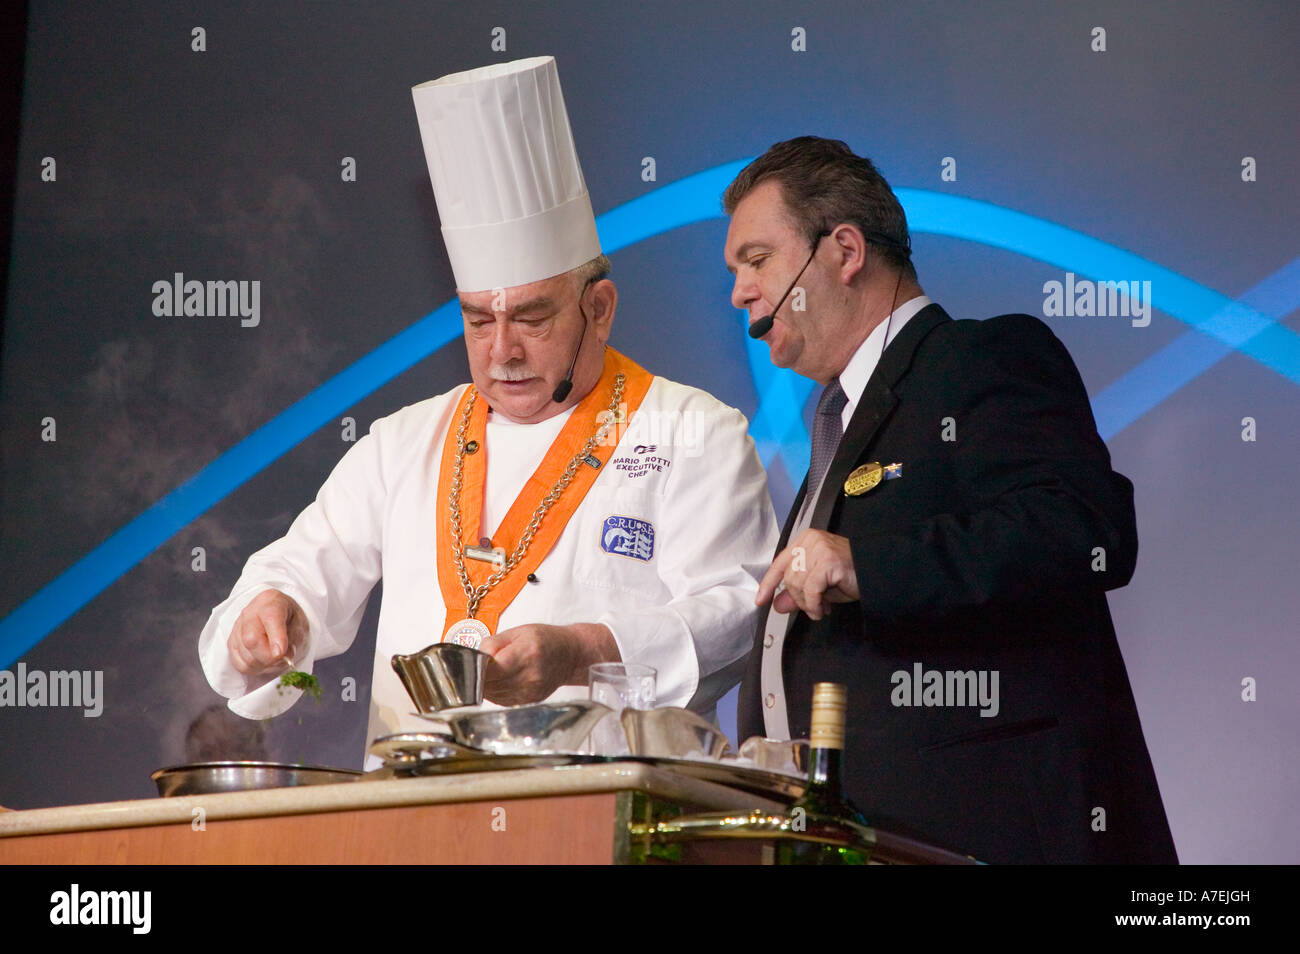 Il capo cuoco dimostra come cucinare un pasto sulla Princess nave da crociera Foto Stock